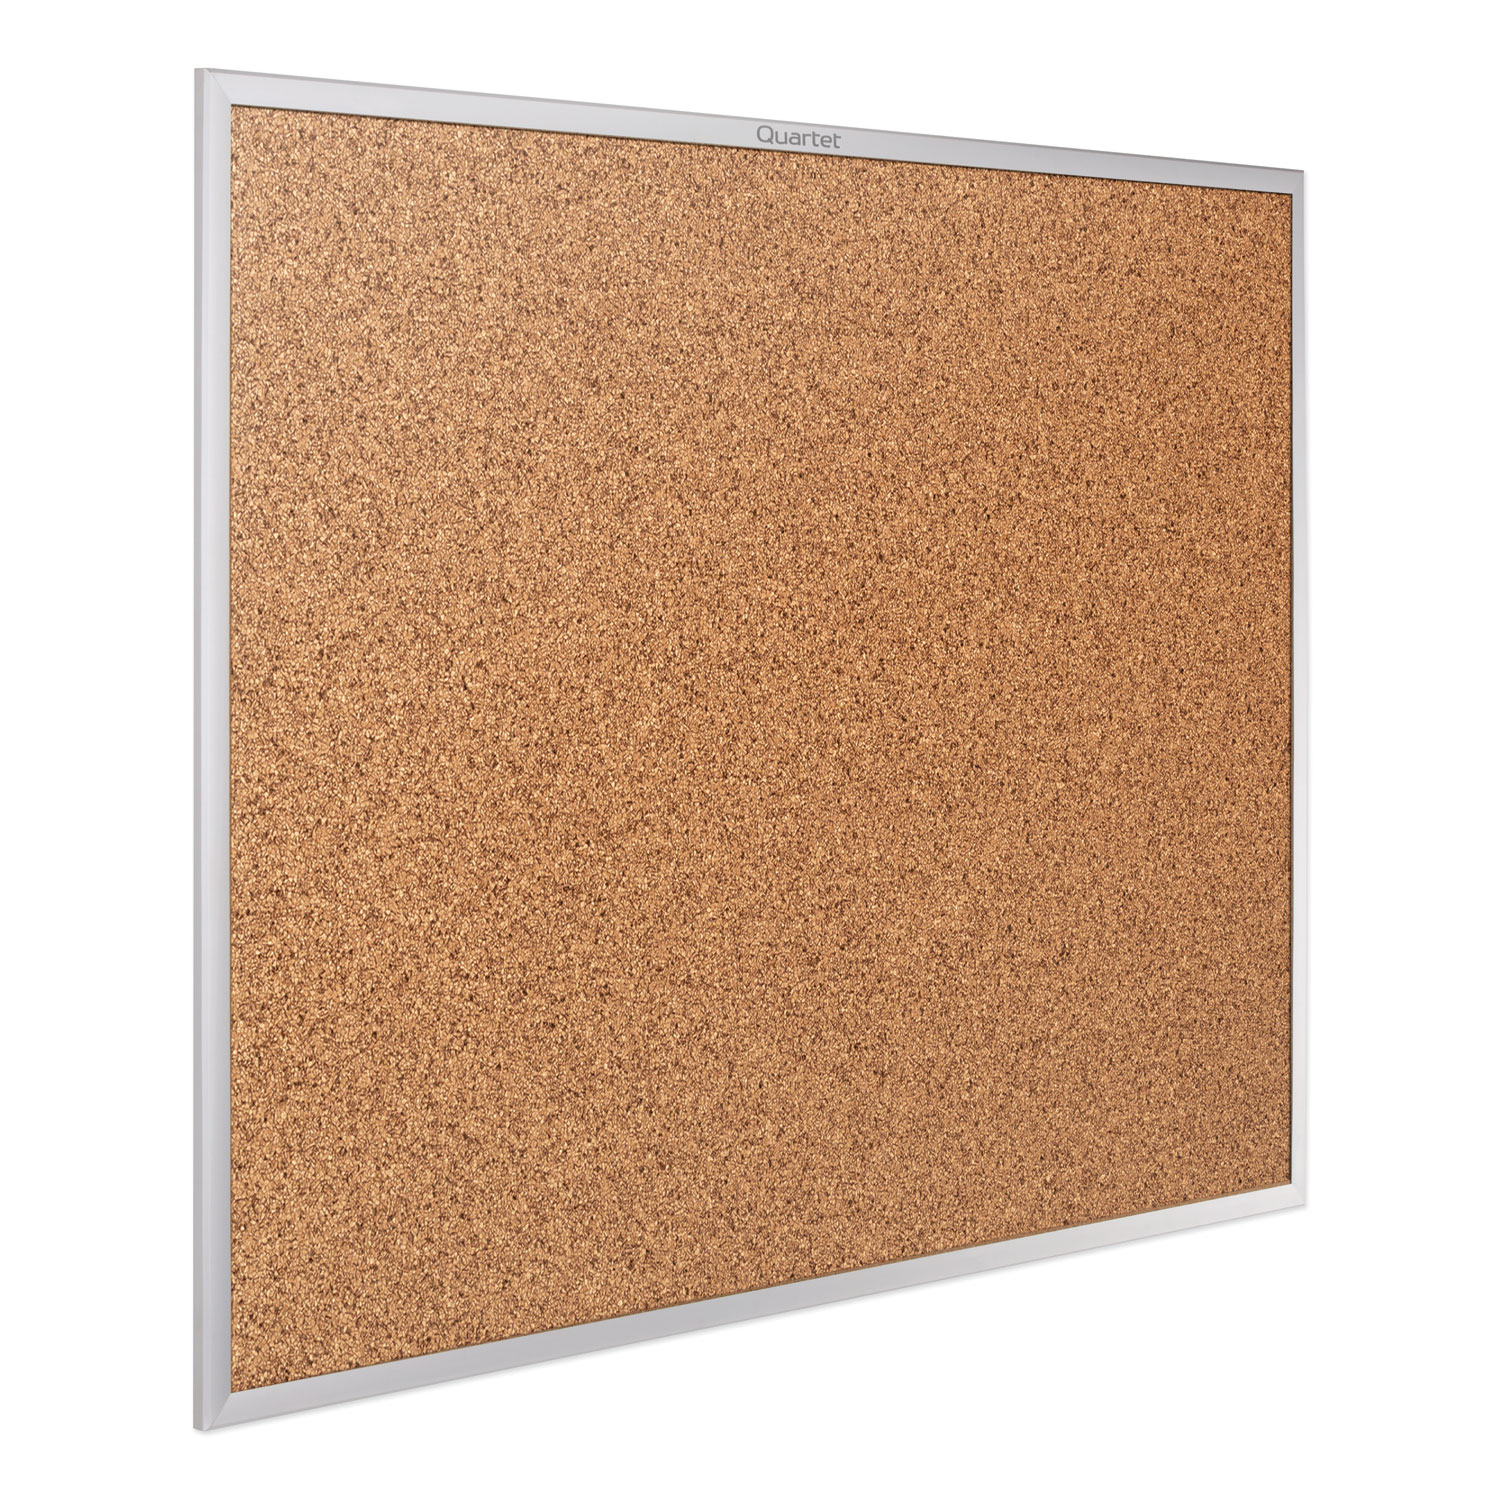 Quartet® Classic Series Cork Bulletin Board, 24 x 18, Silver Aluminum Frame